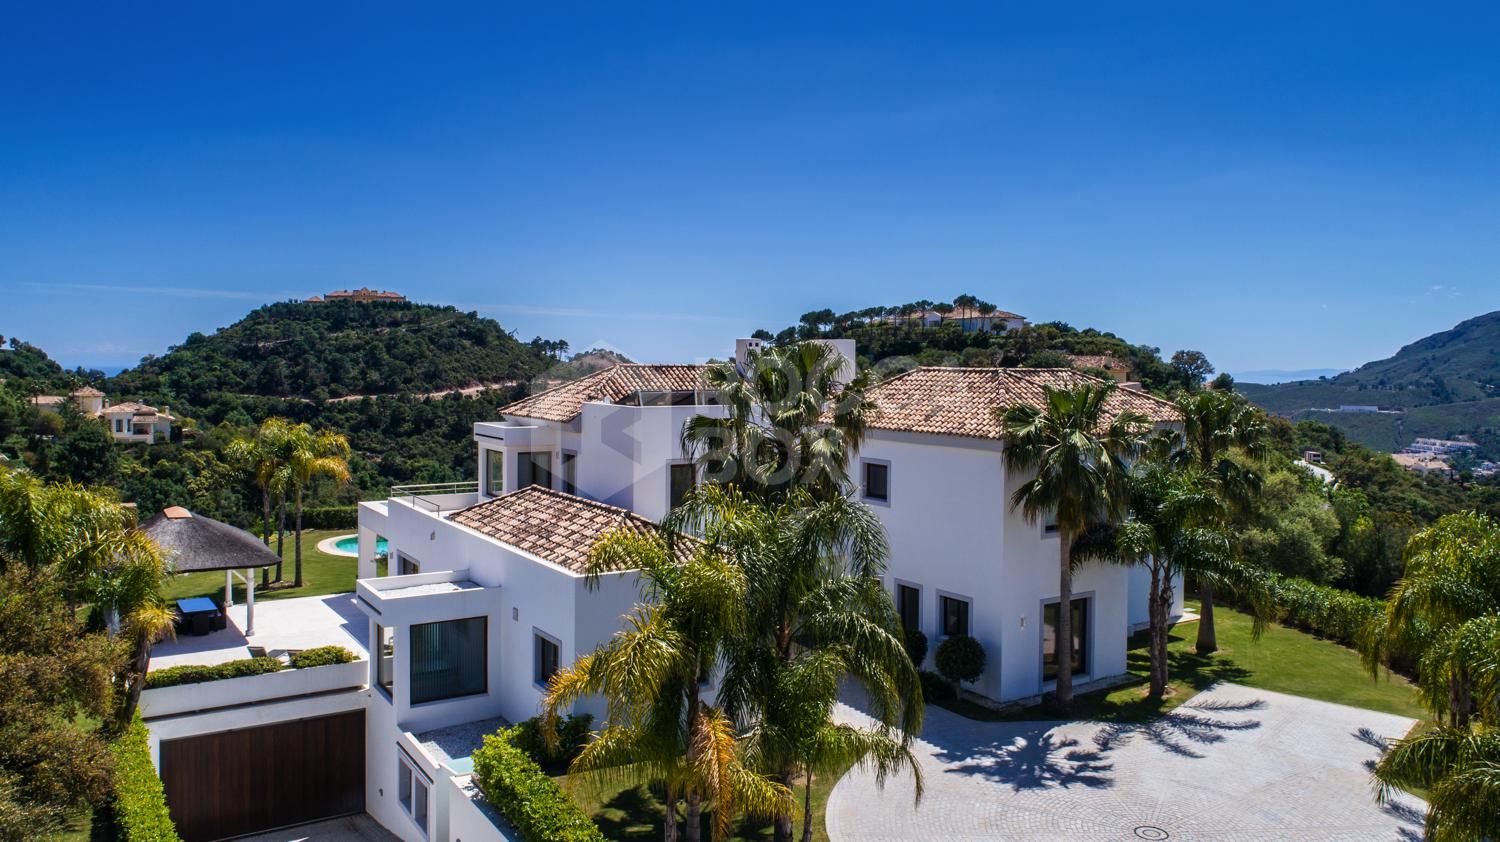 ARFV2038 - Contemporary villa for sale with excellent south orientation in La Zagaleta in Benahavis